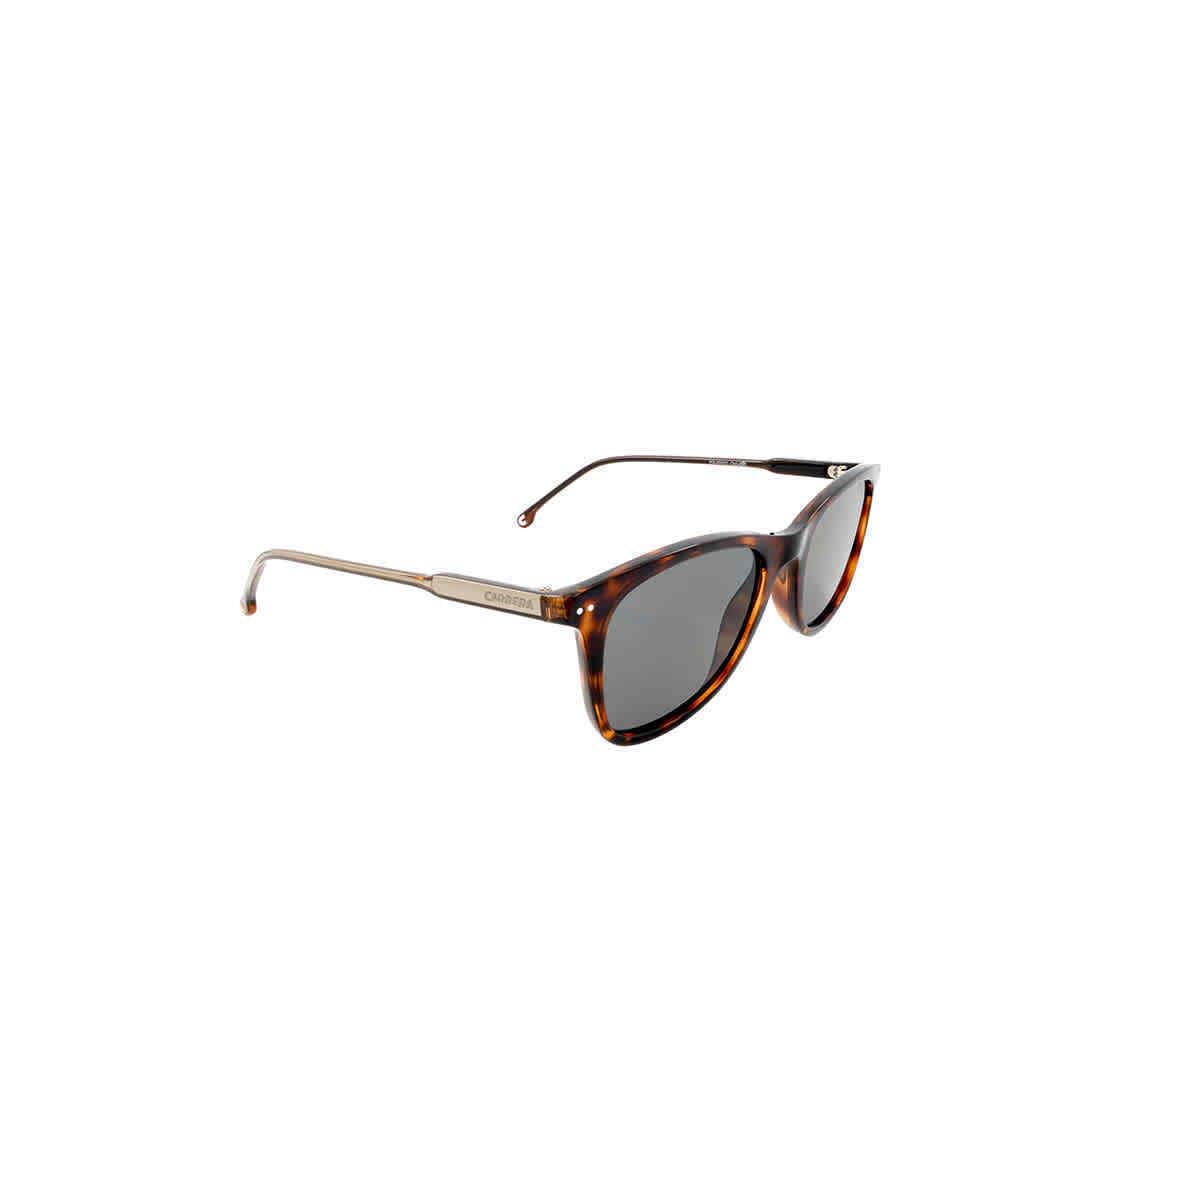 Carrera Polarized Grey Square Men`s Sunglasses Carrera 197/S 0WR9/M9 51